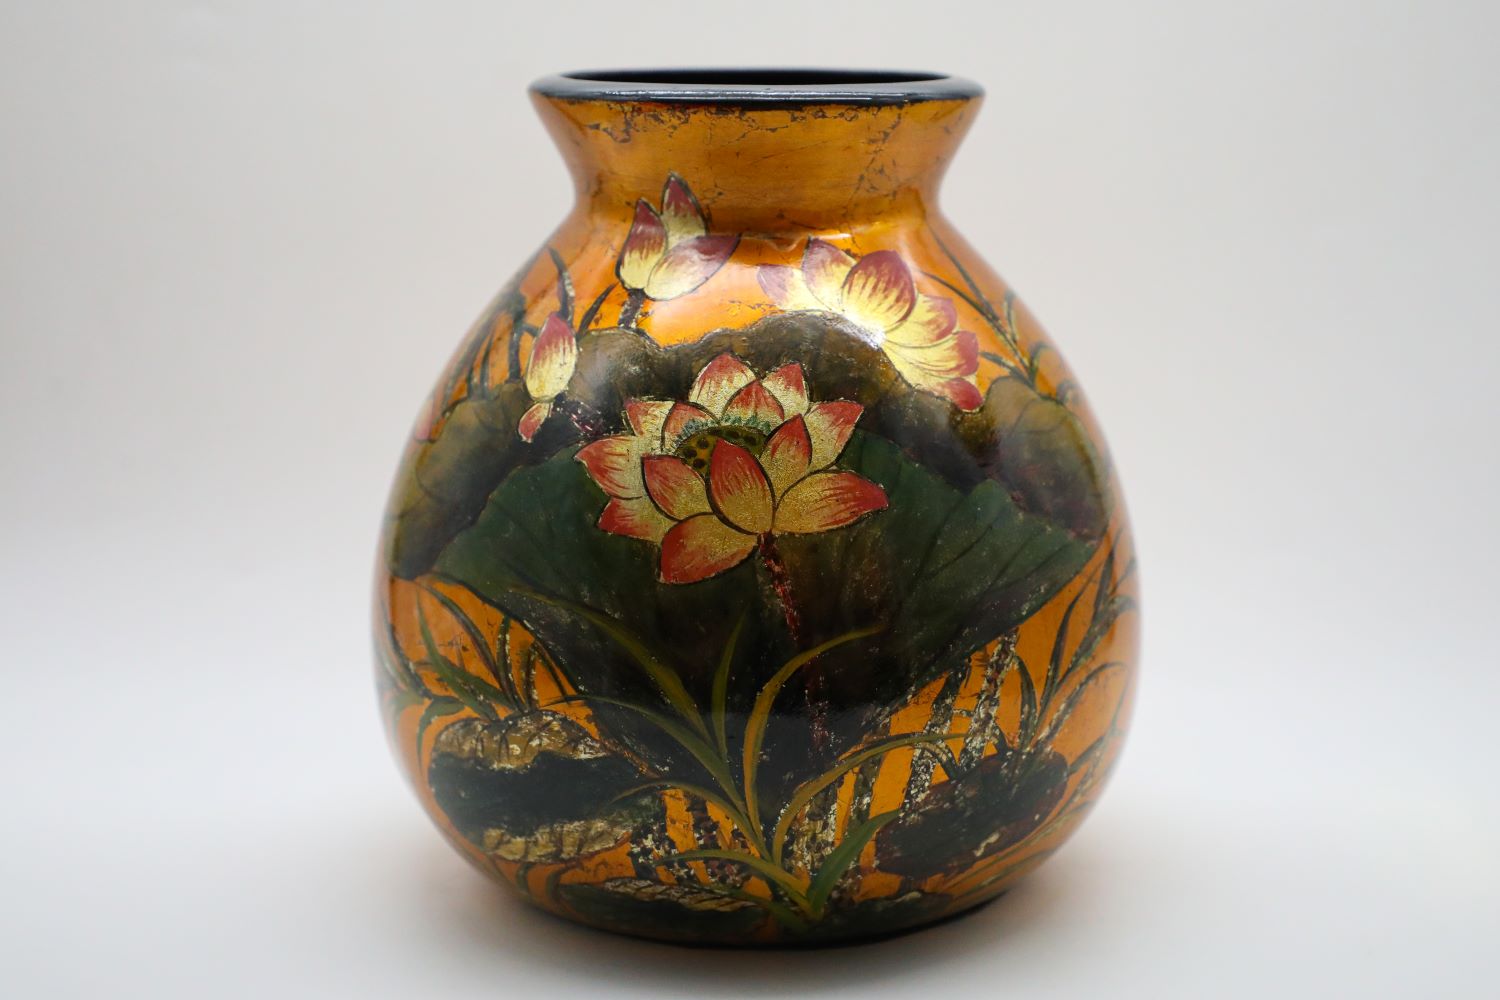 Vase of Royal Lotus - Vietnamese Ceramic Vase by Artist Dinh Thi Thanh